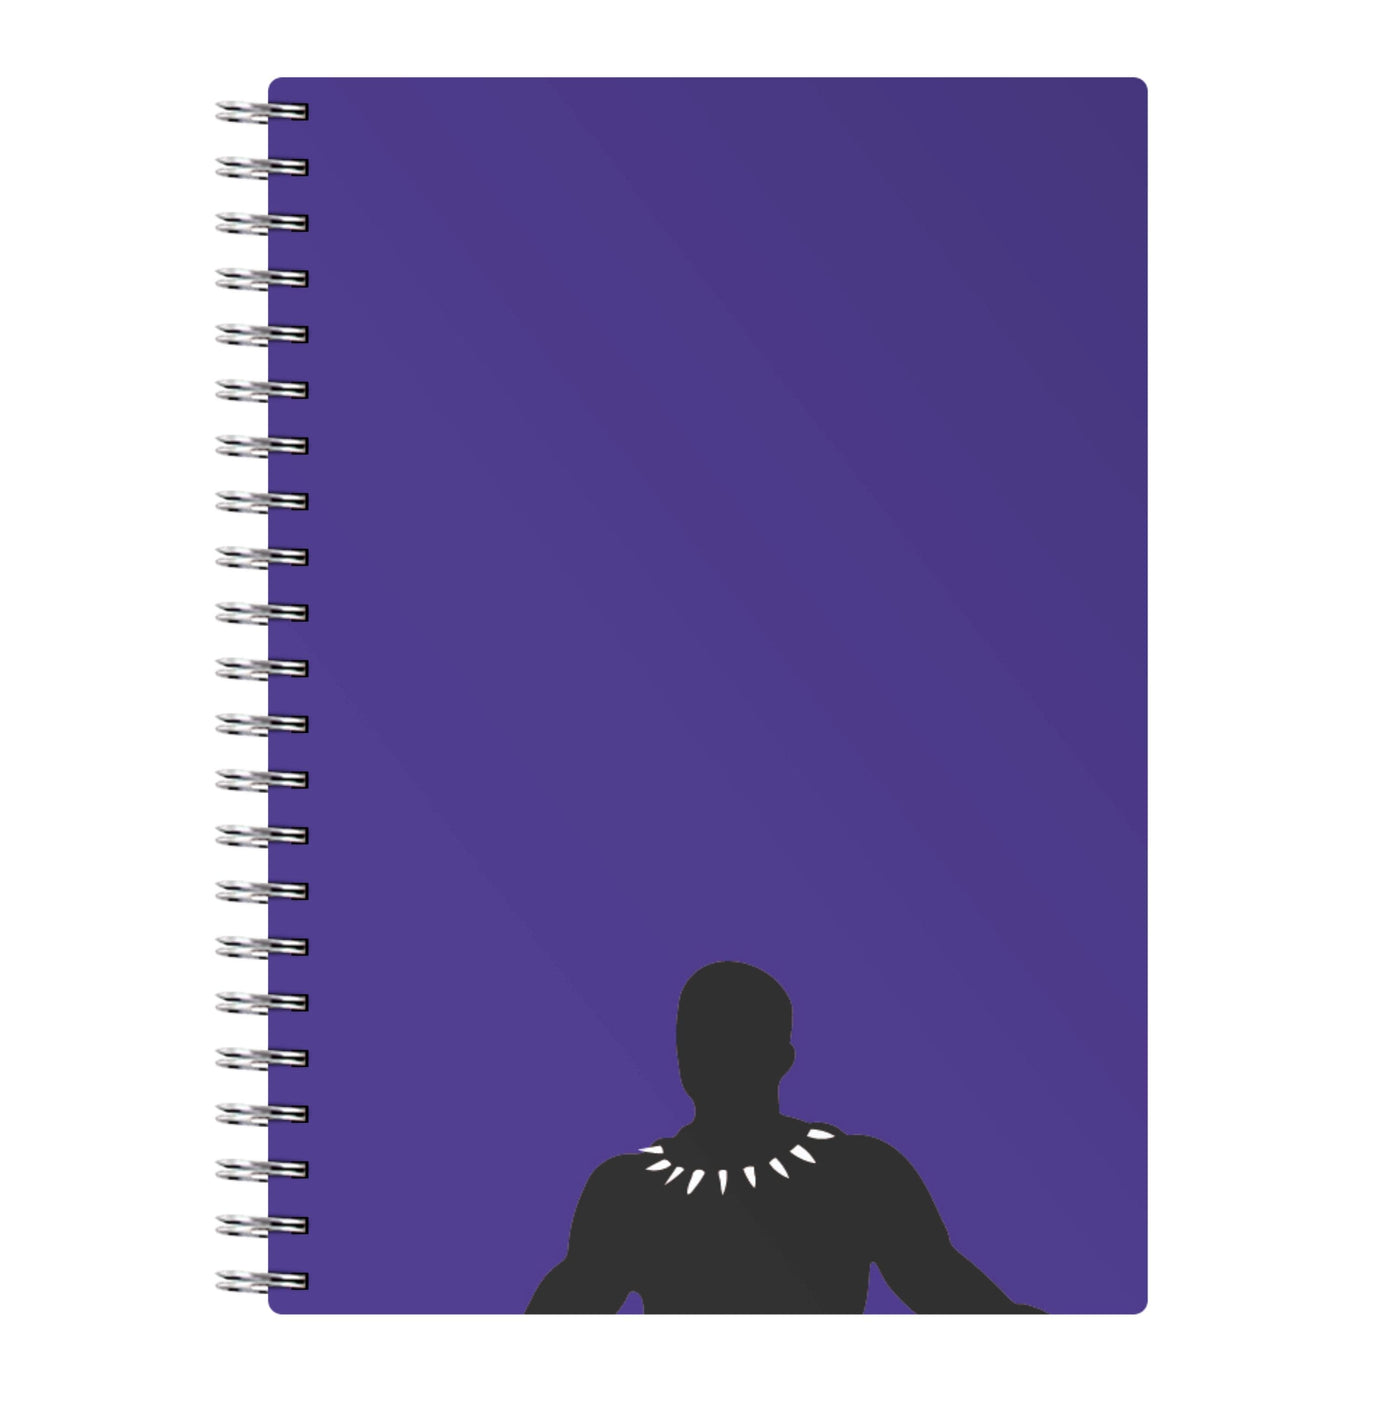 Black Outline - Black Panther Notebook